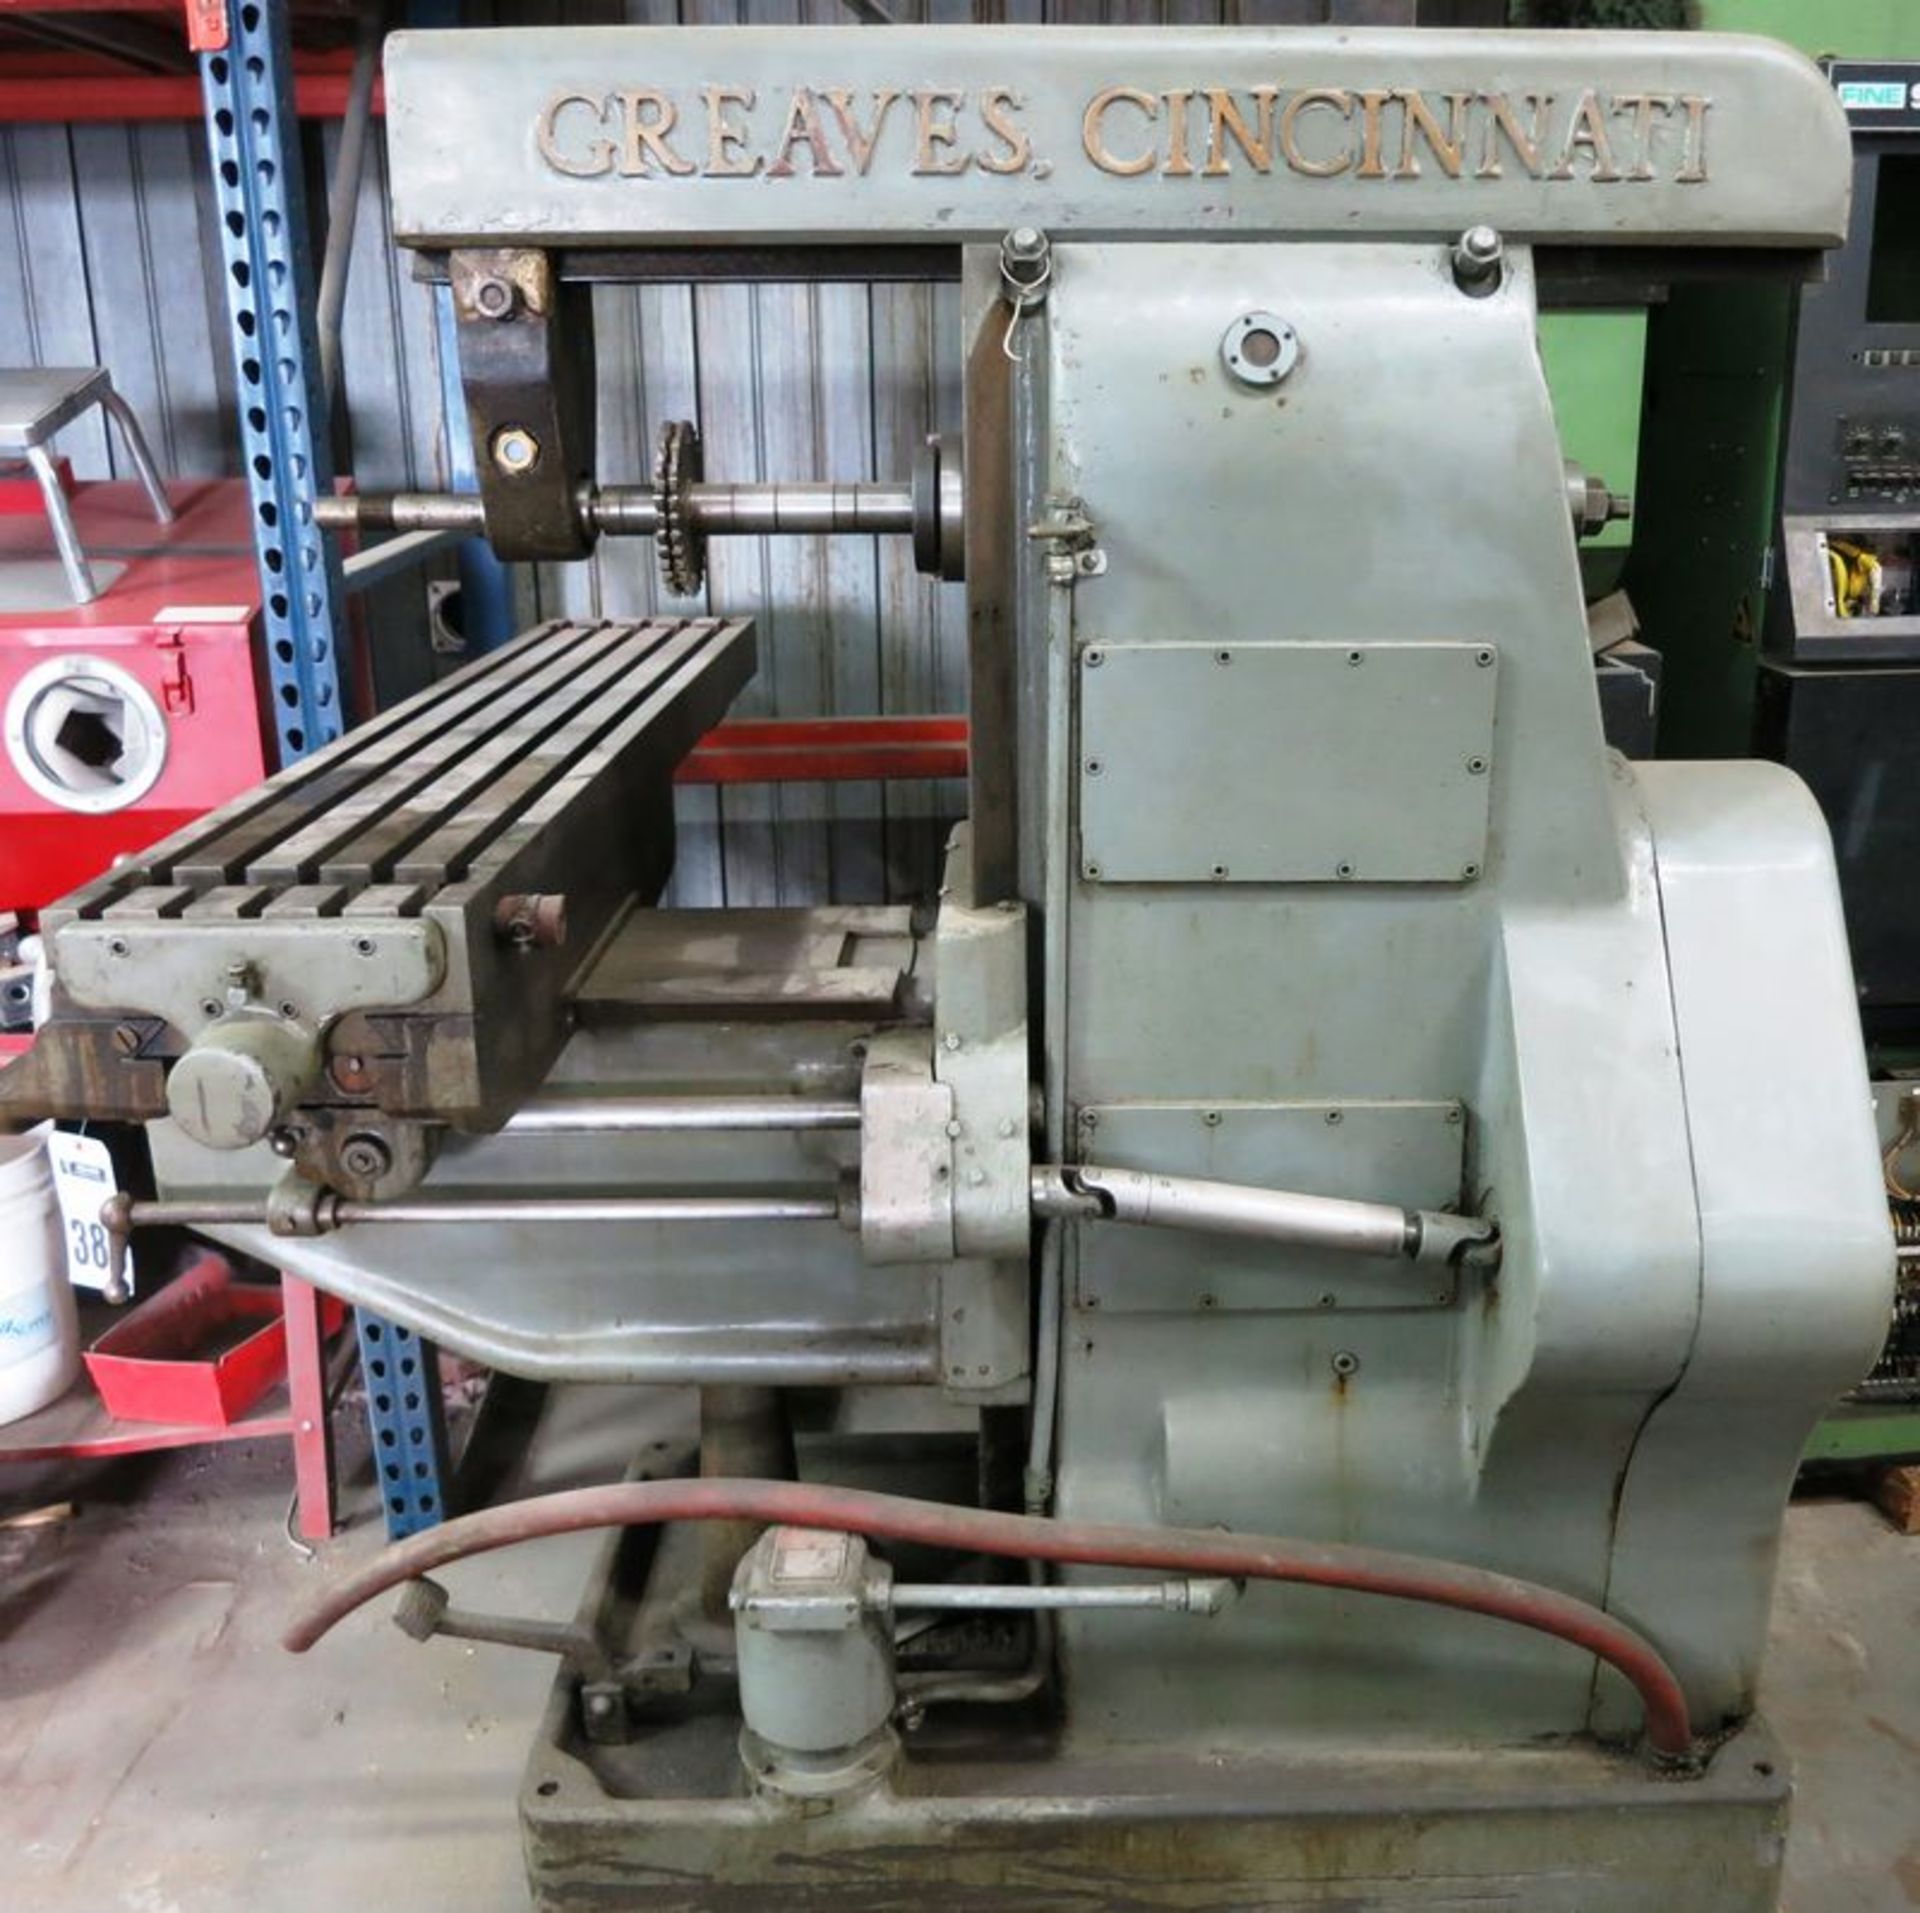 Greaves Cincinnati Horizontal Milling Machine, S/N 128381 - Image 3 of 4